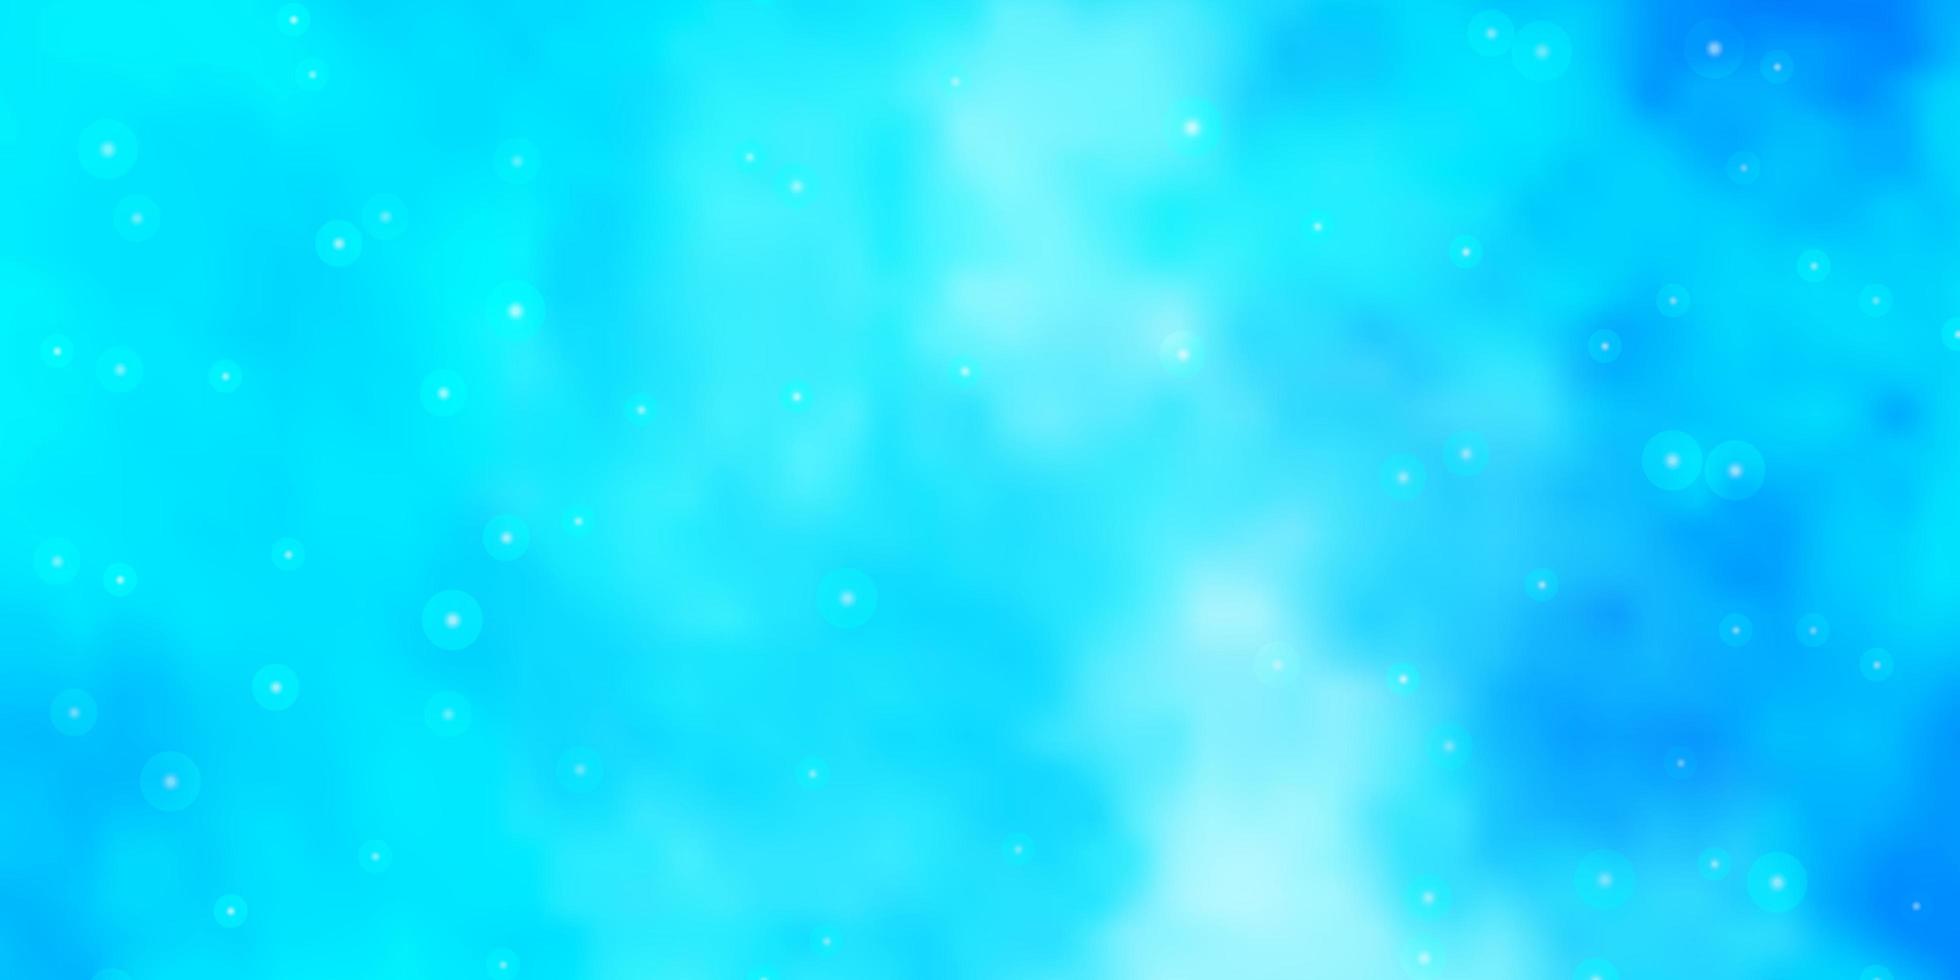 texture de vecteur bleu clair avec de belles étoiles. illustration colorée avec des étoiles dégradées abstraites. modèle pour emballer des cadeaux.